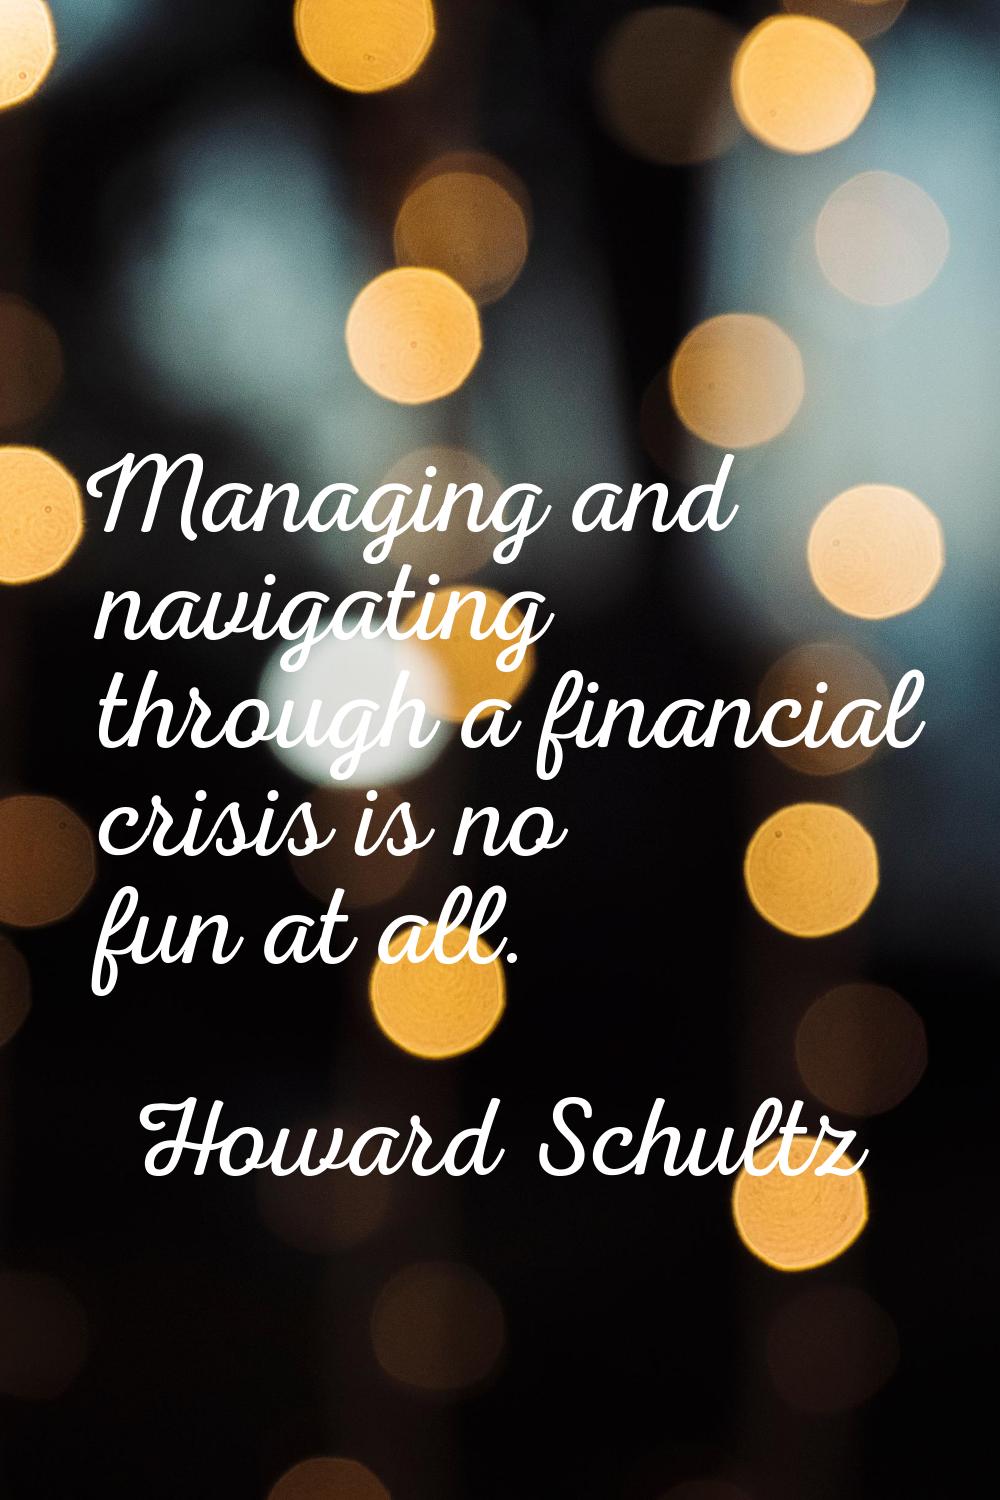 Managing and navigating through a financial crisis is no fun at all.